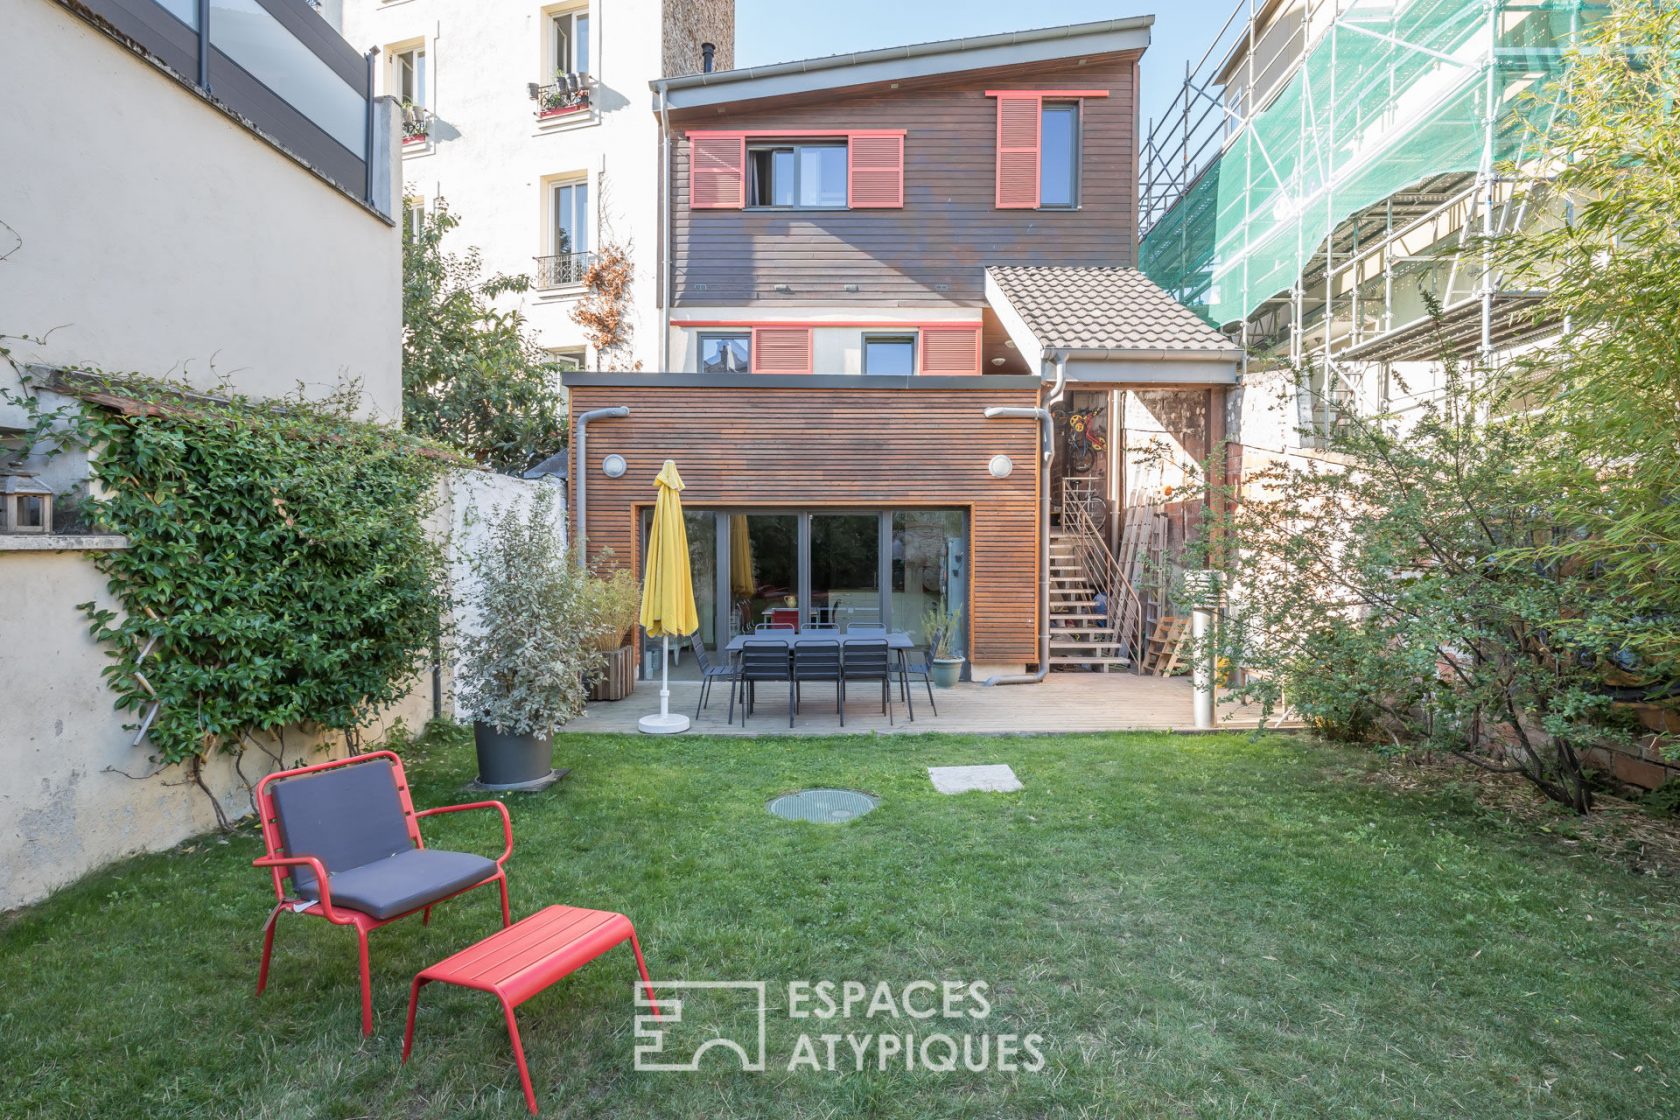 Maison avec terrasse et jardin revue par architecte